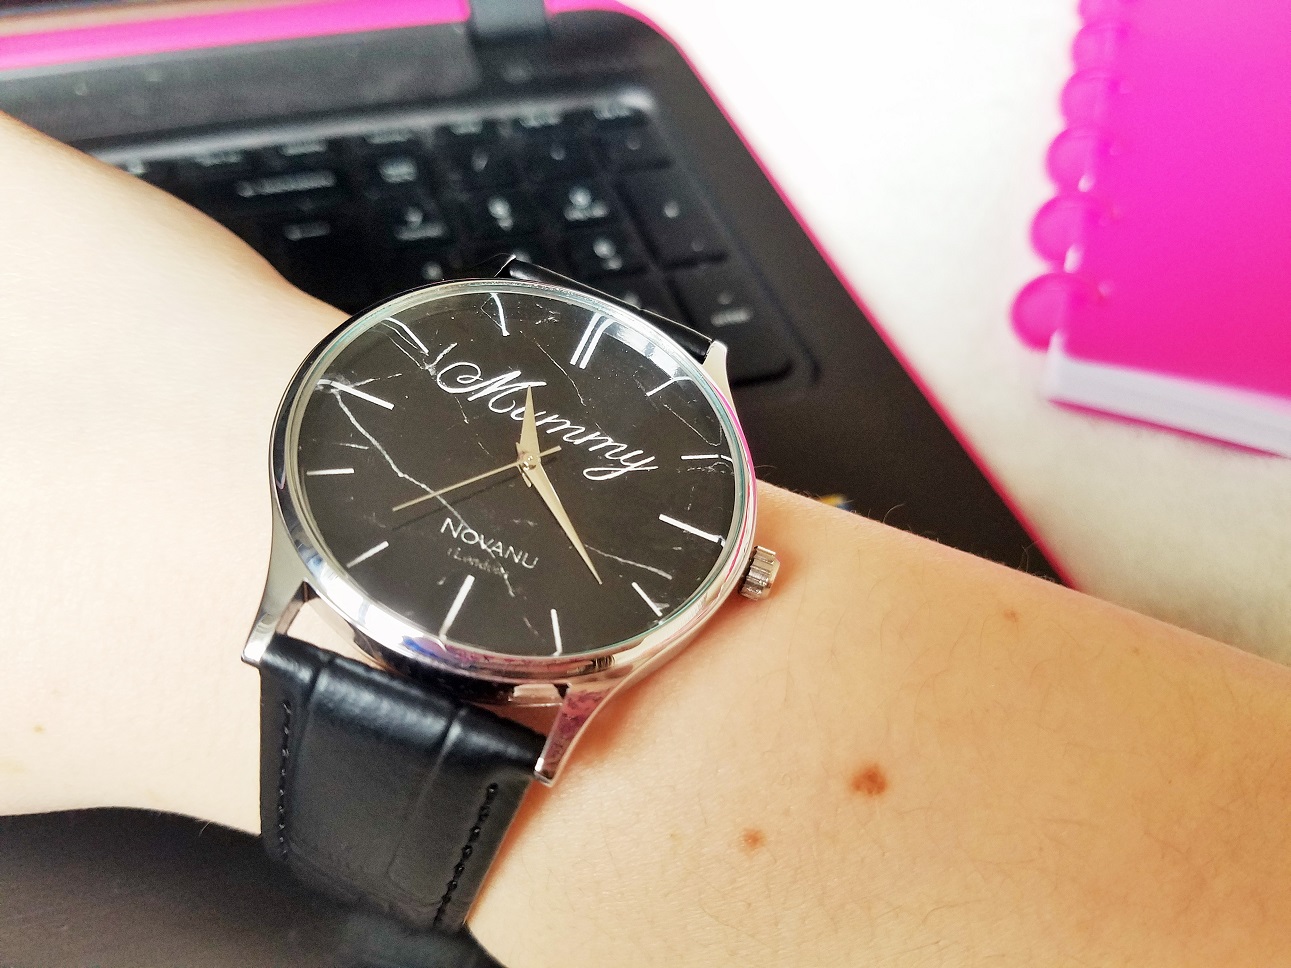 Novanu London Watch - wrist watch and laptop